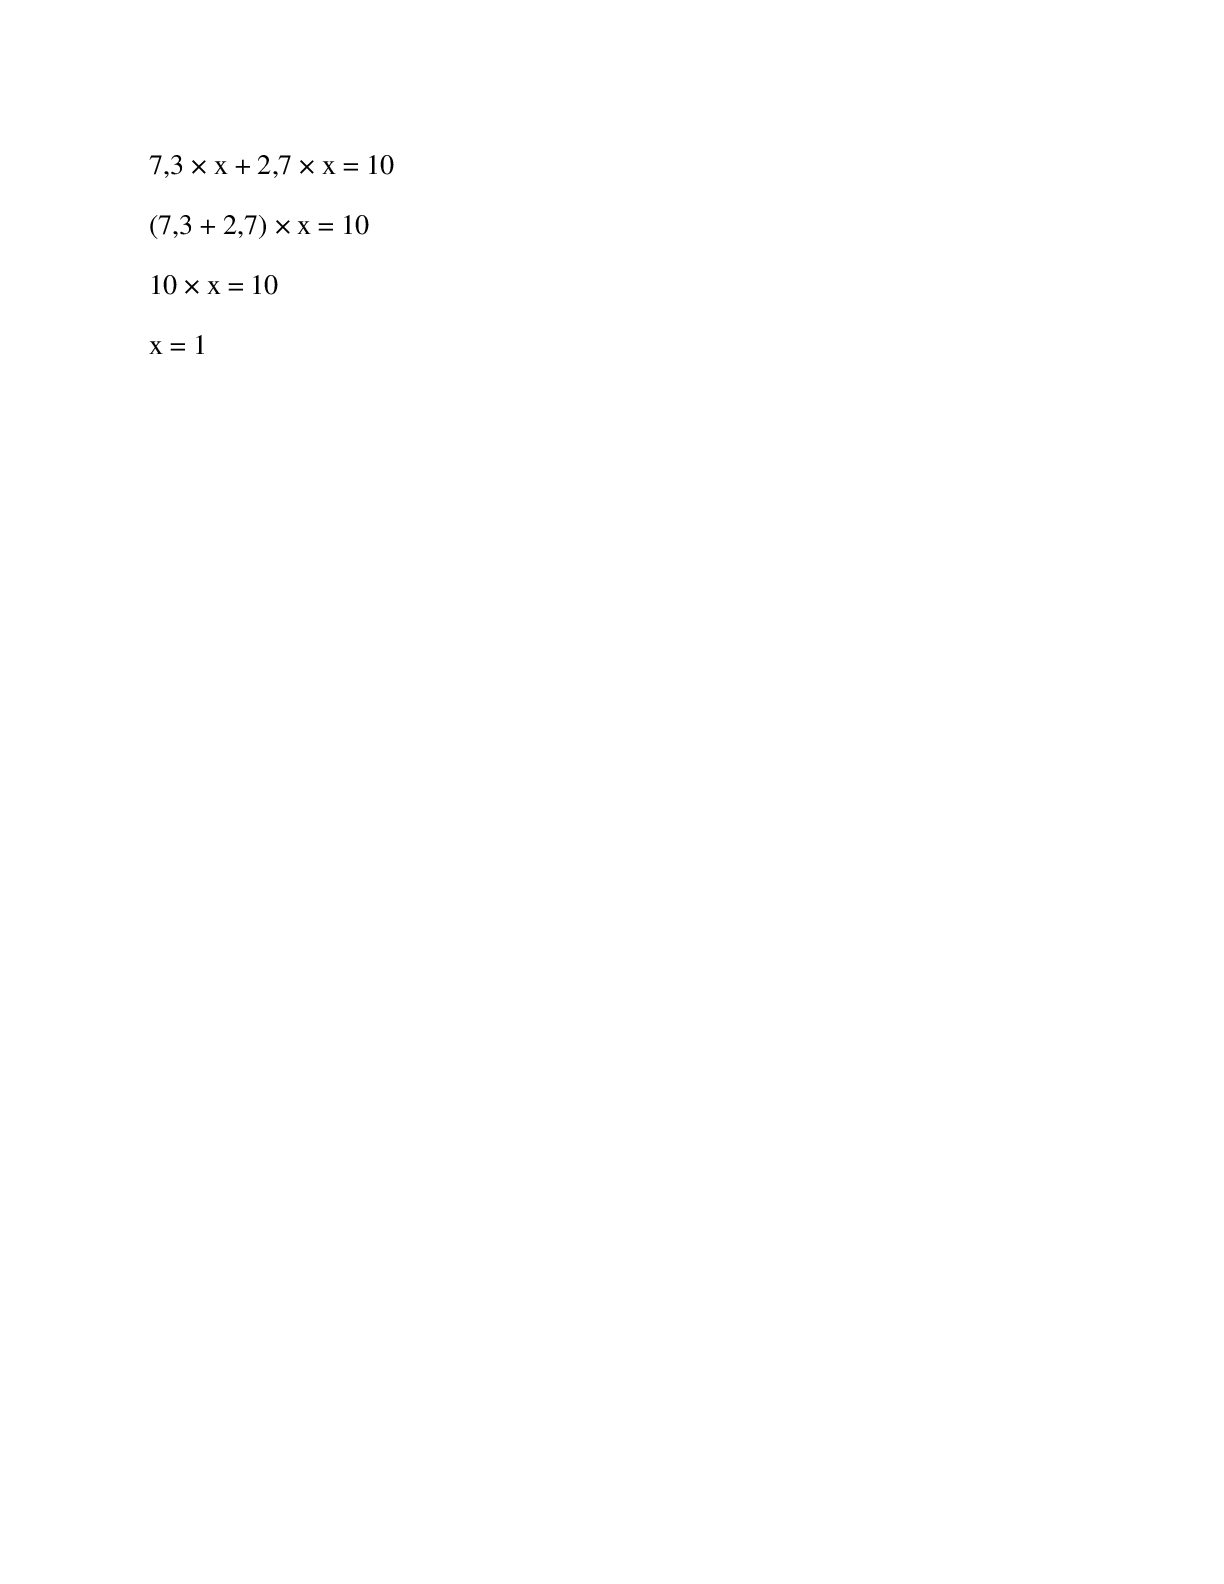 Tính nhẩm kết quả tìm x: 8,7 × x = 8,7 (trang 2)